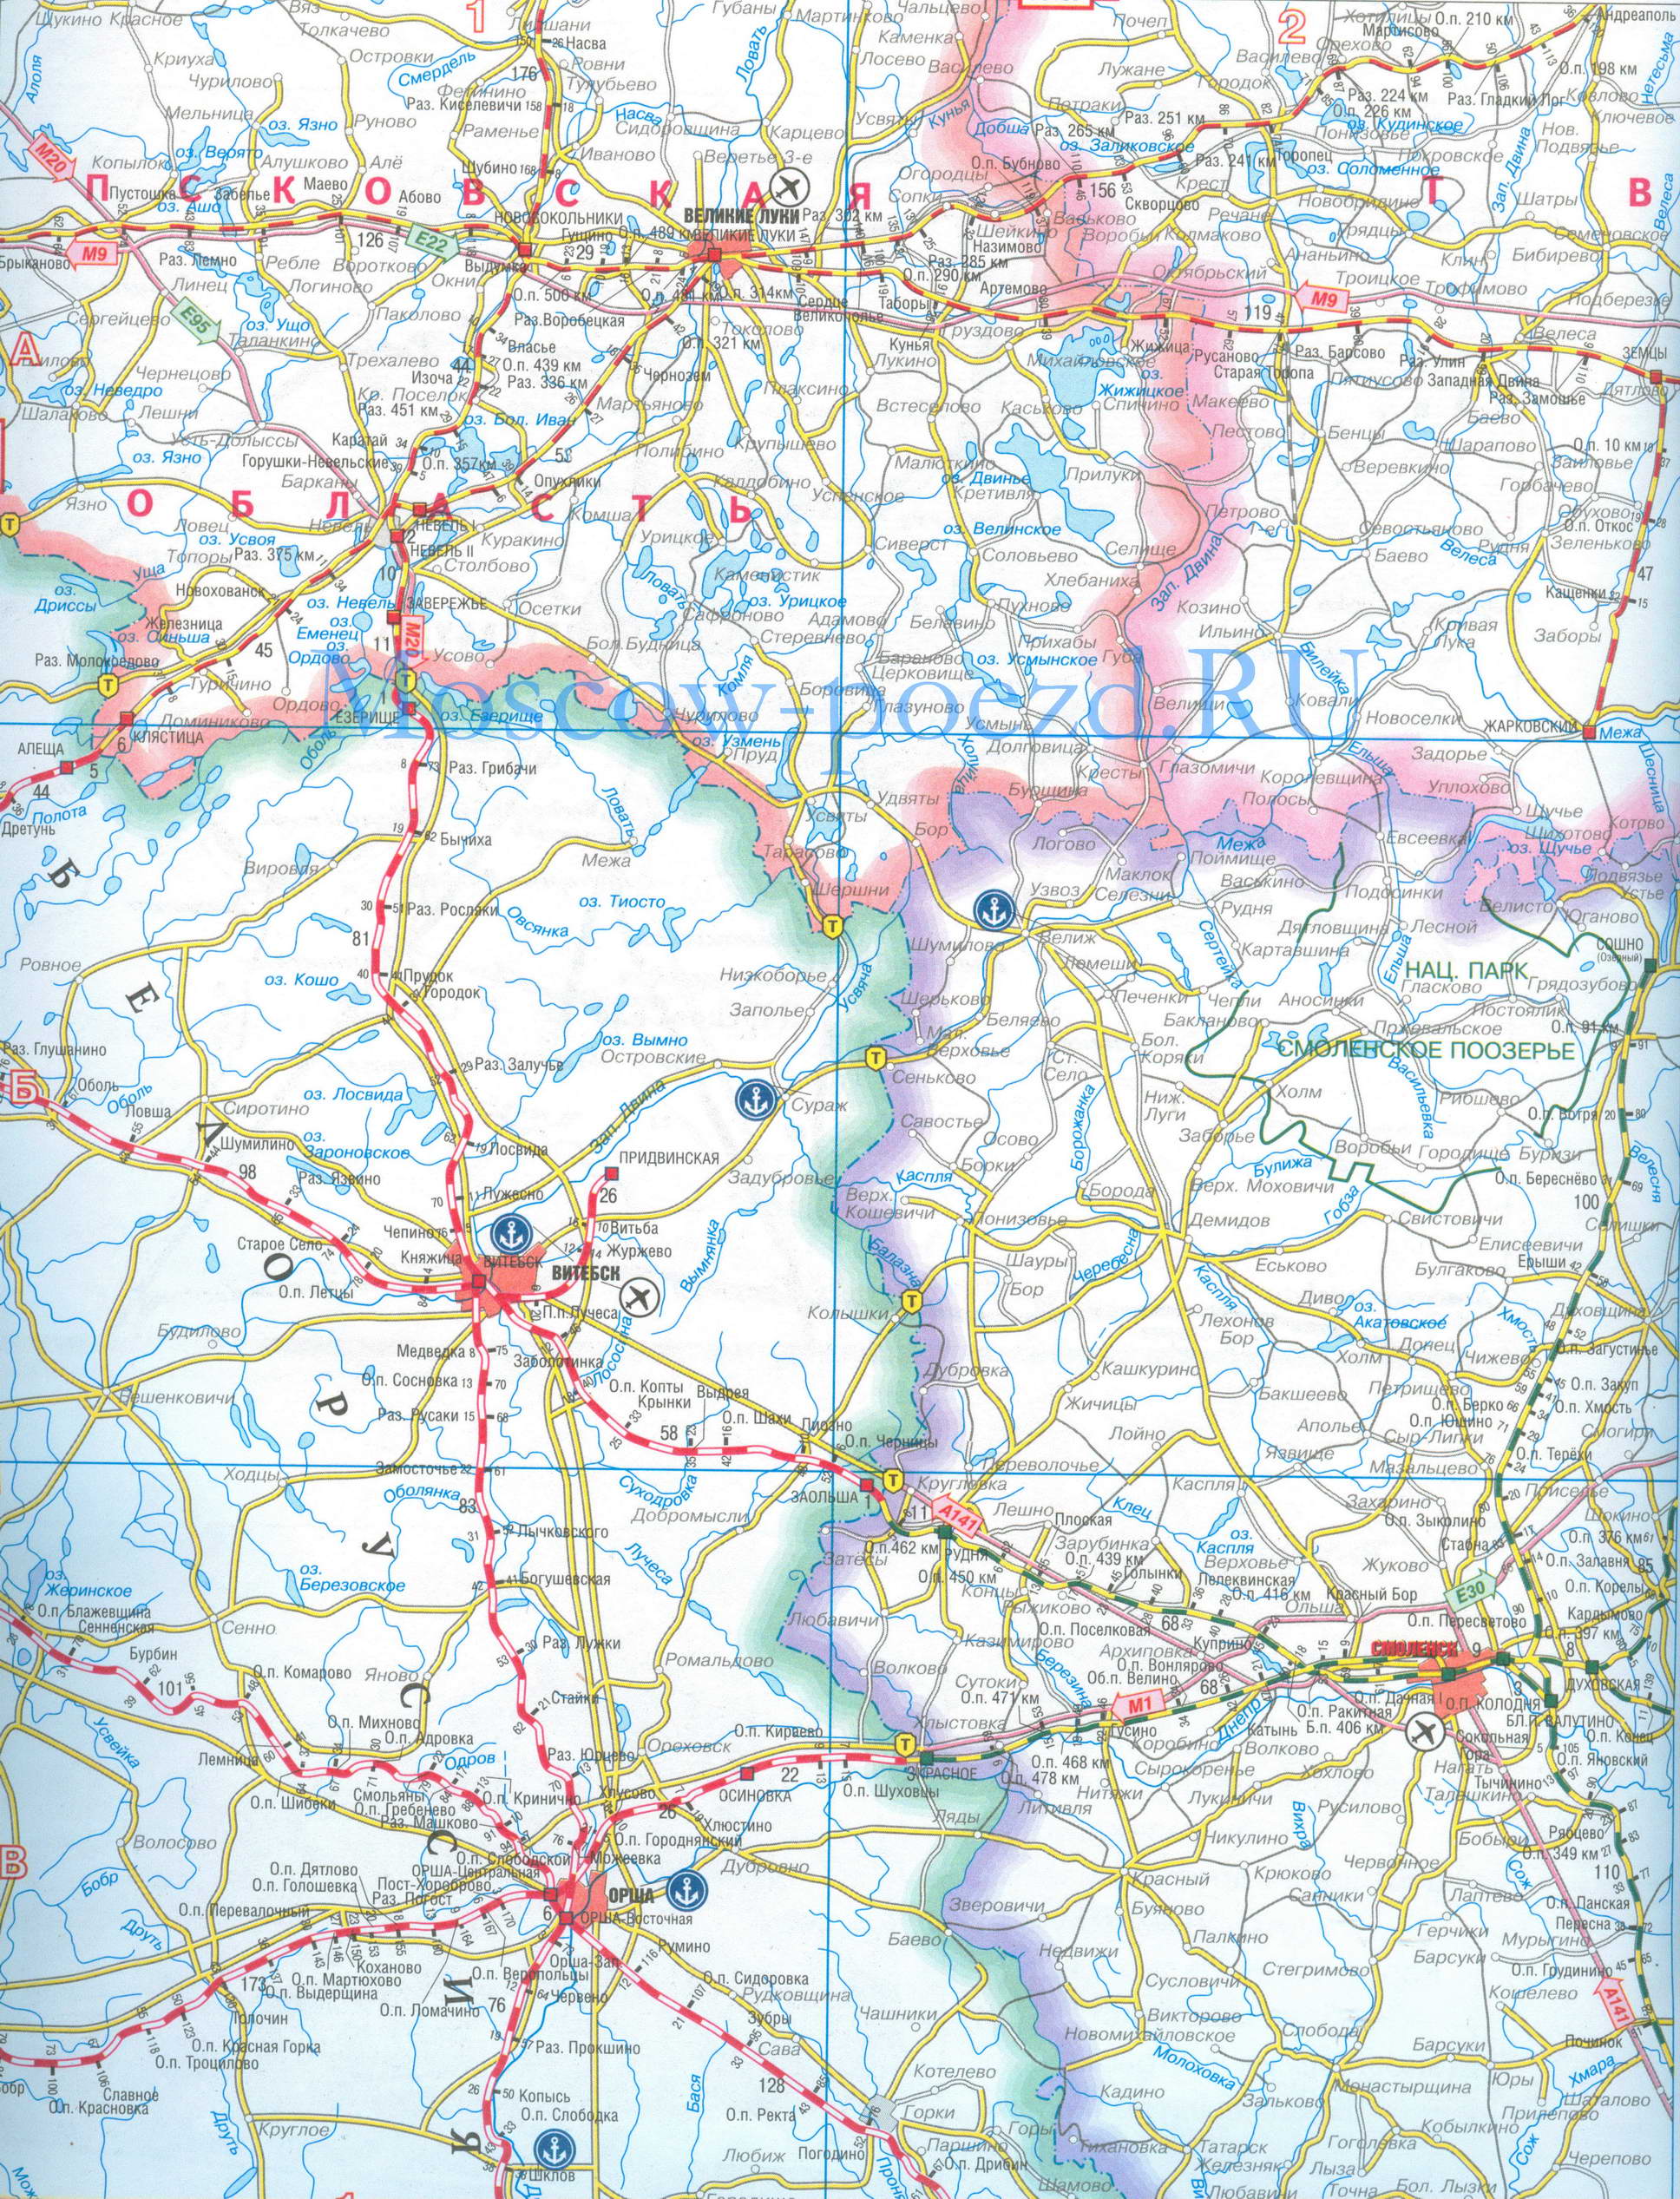 Карта Белорусской железной дороги - Витебск, Орша, Смоленск, Невель. Карта жд Белоруссии, A0 - 